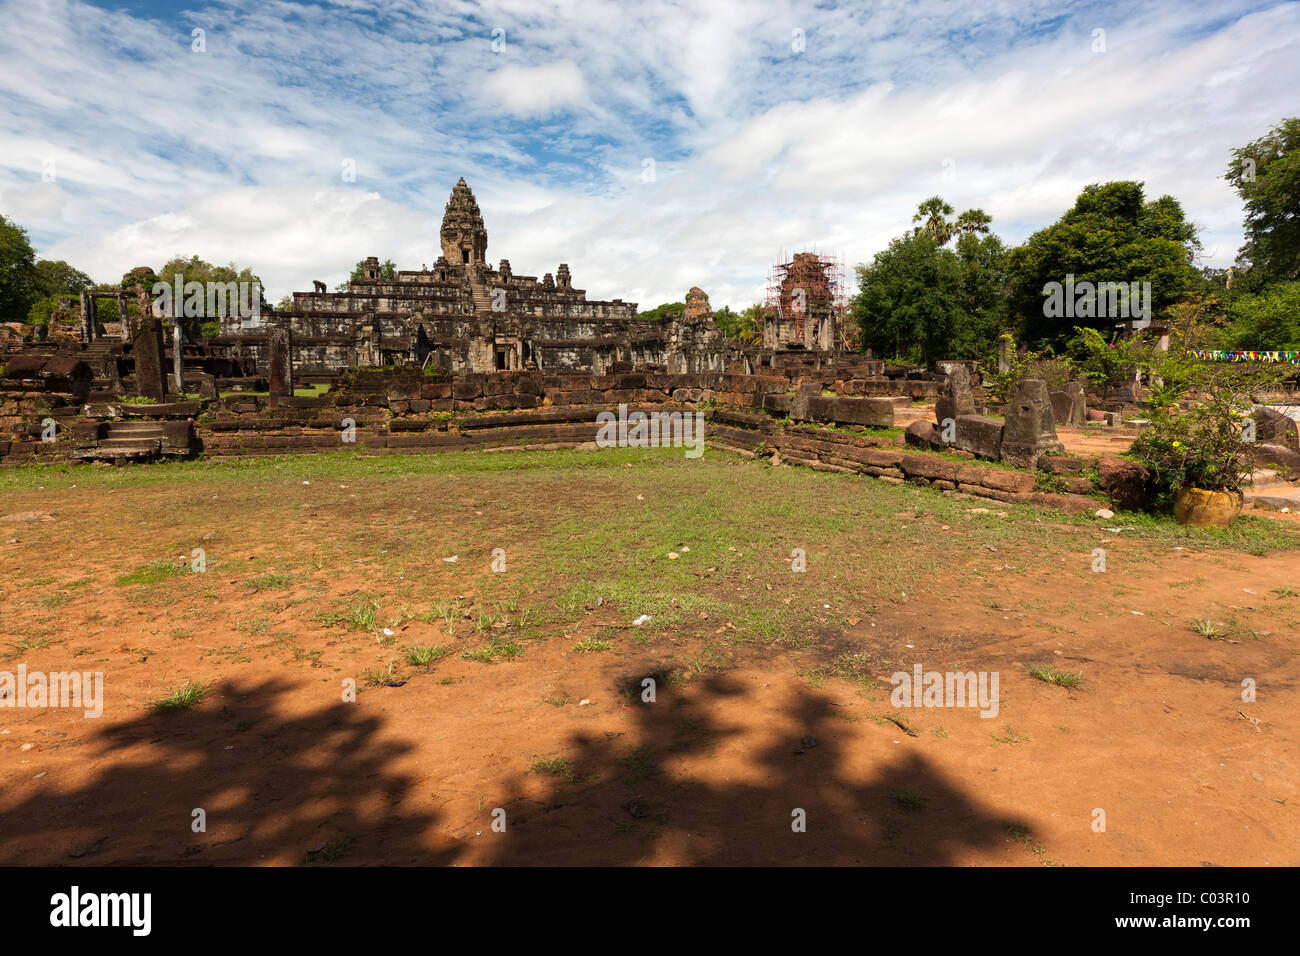 Templo Bakong cerca de Angkor, sitio del Patrimonio Mundial de la UNESCO, de la provincia de Siem Reap, Camboya, en Indochina, en el sudeste de Asia Foto de stock